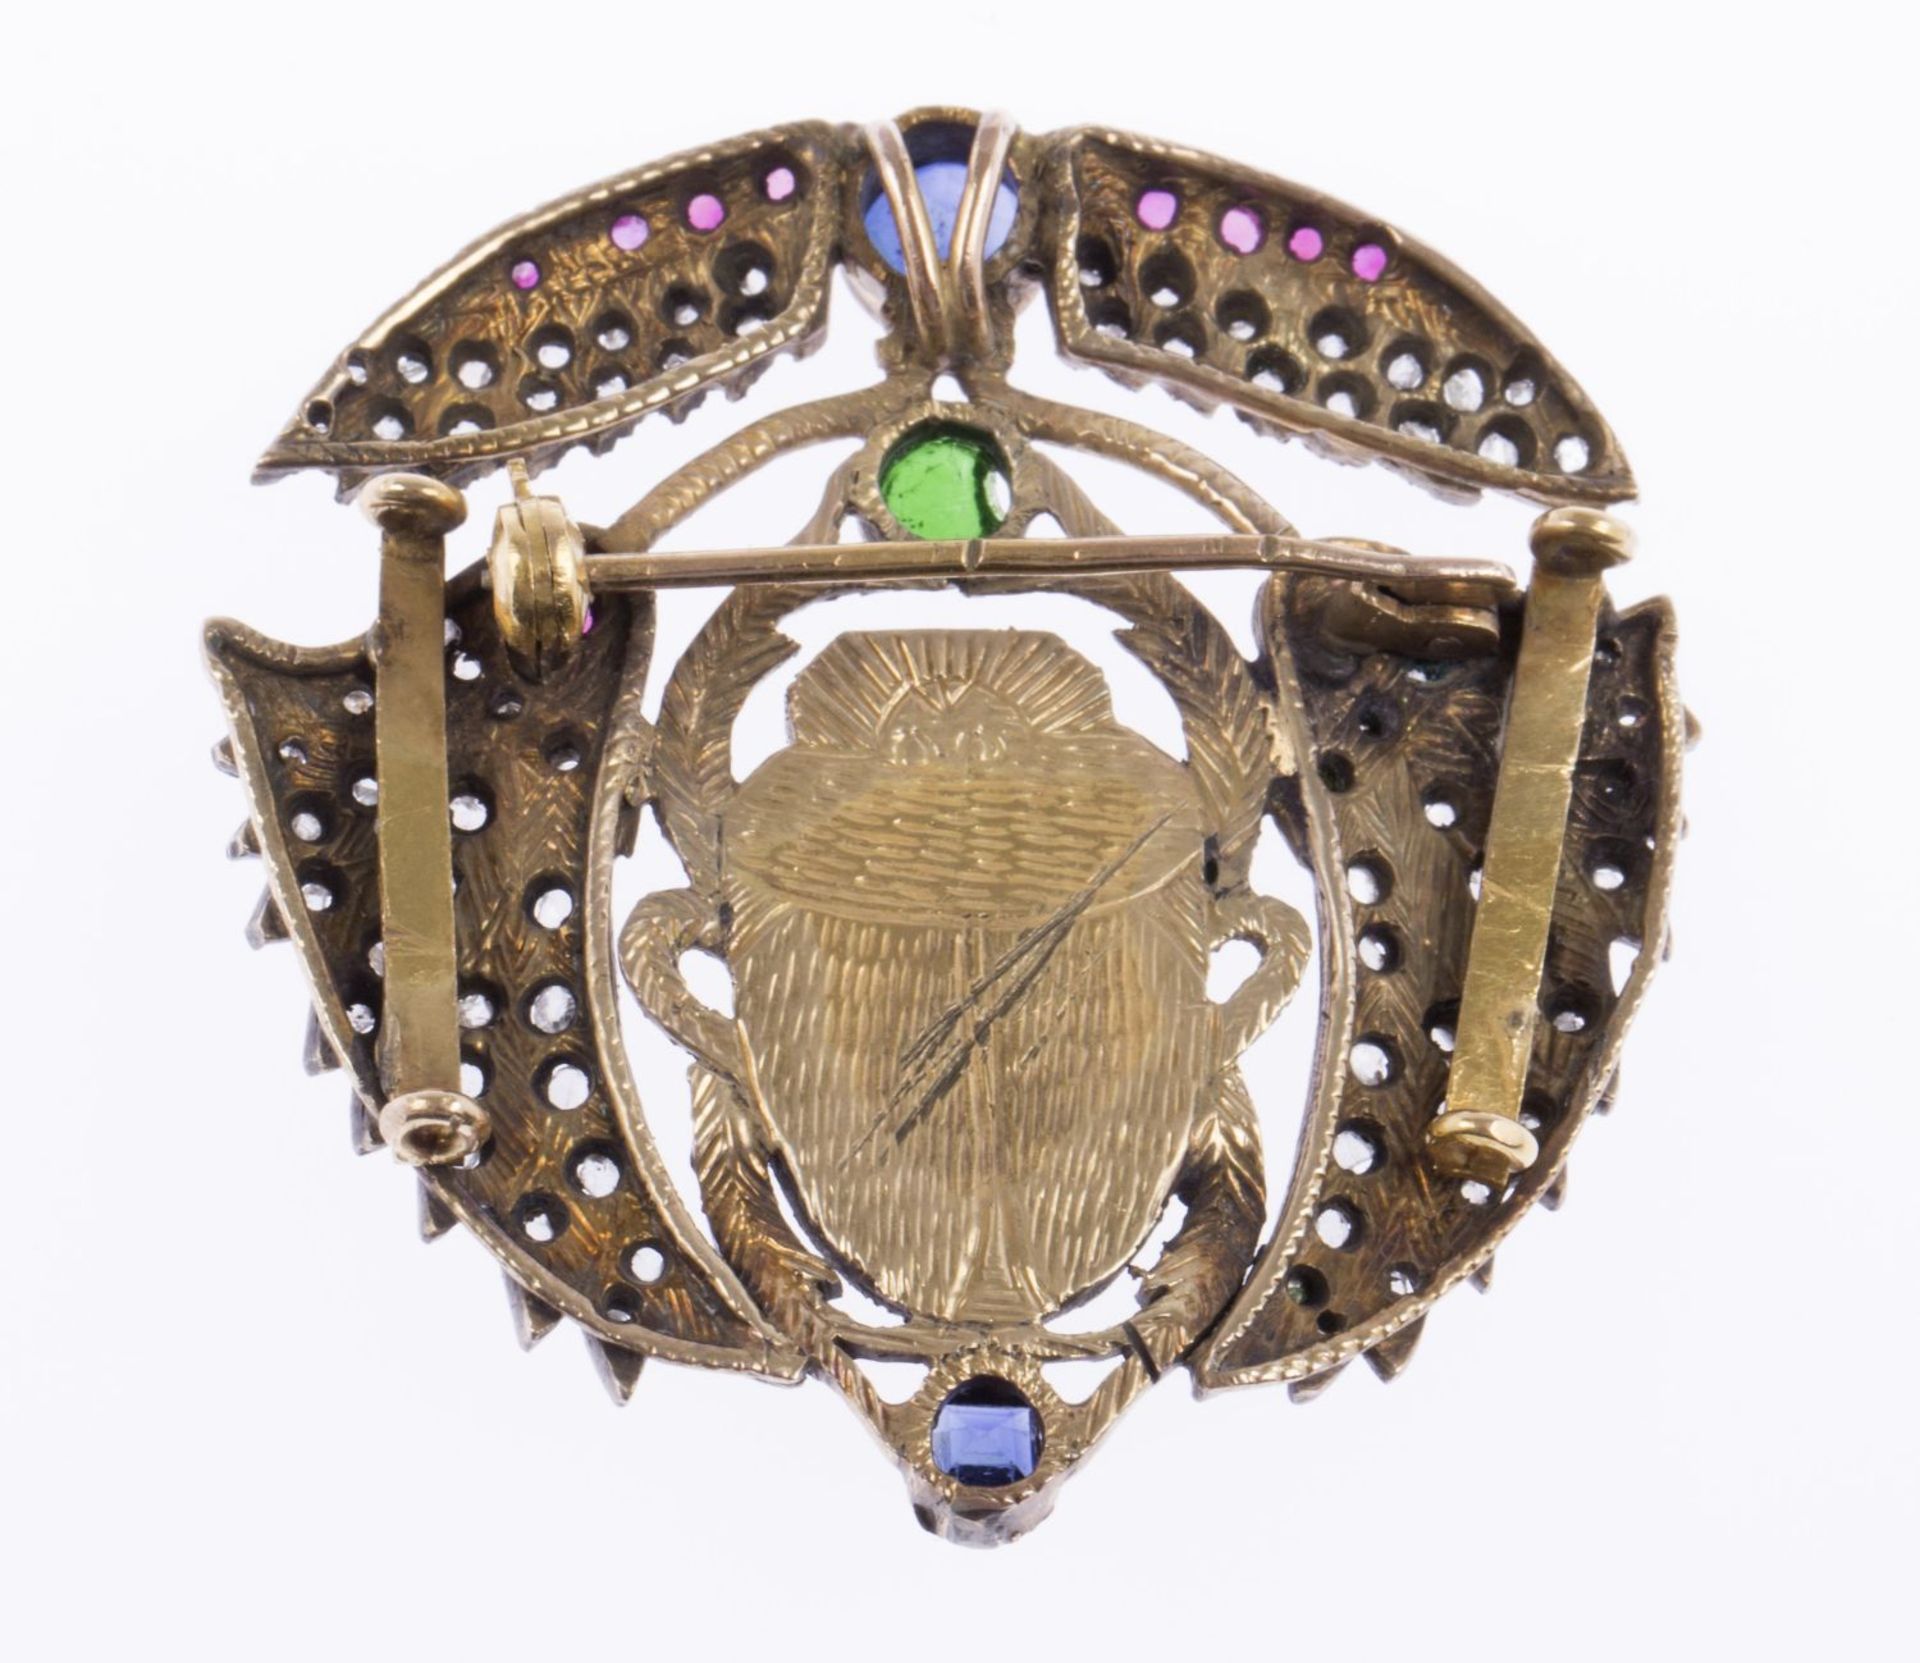 Diamant-Farbstein-Brosche in Käferform Gelbgold 585 (geprüft). Ausgefasst mit versch. Farbsteinen u. - Bild 2 aus 2